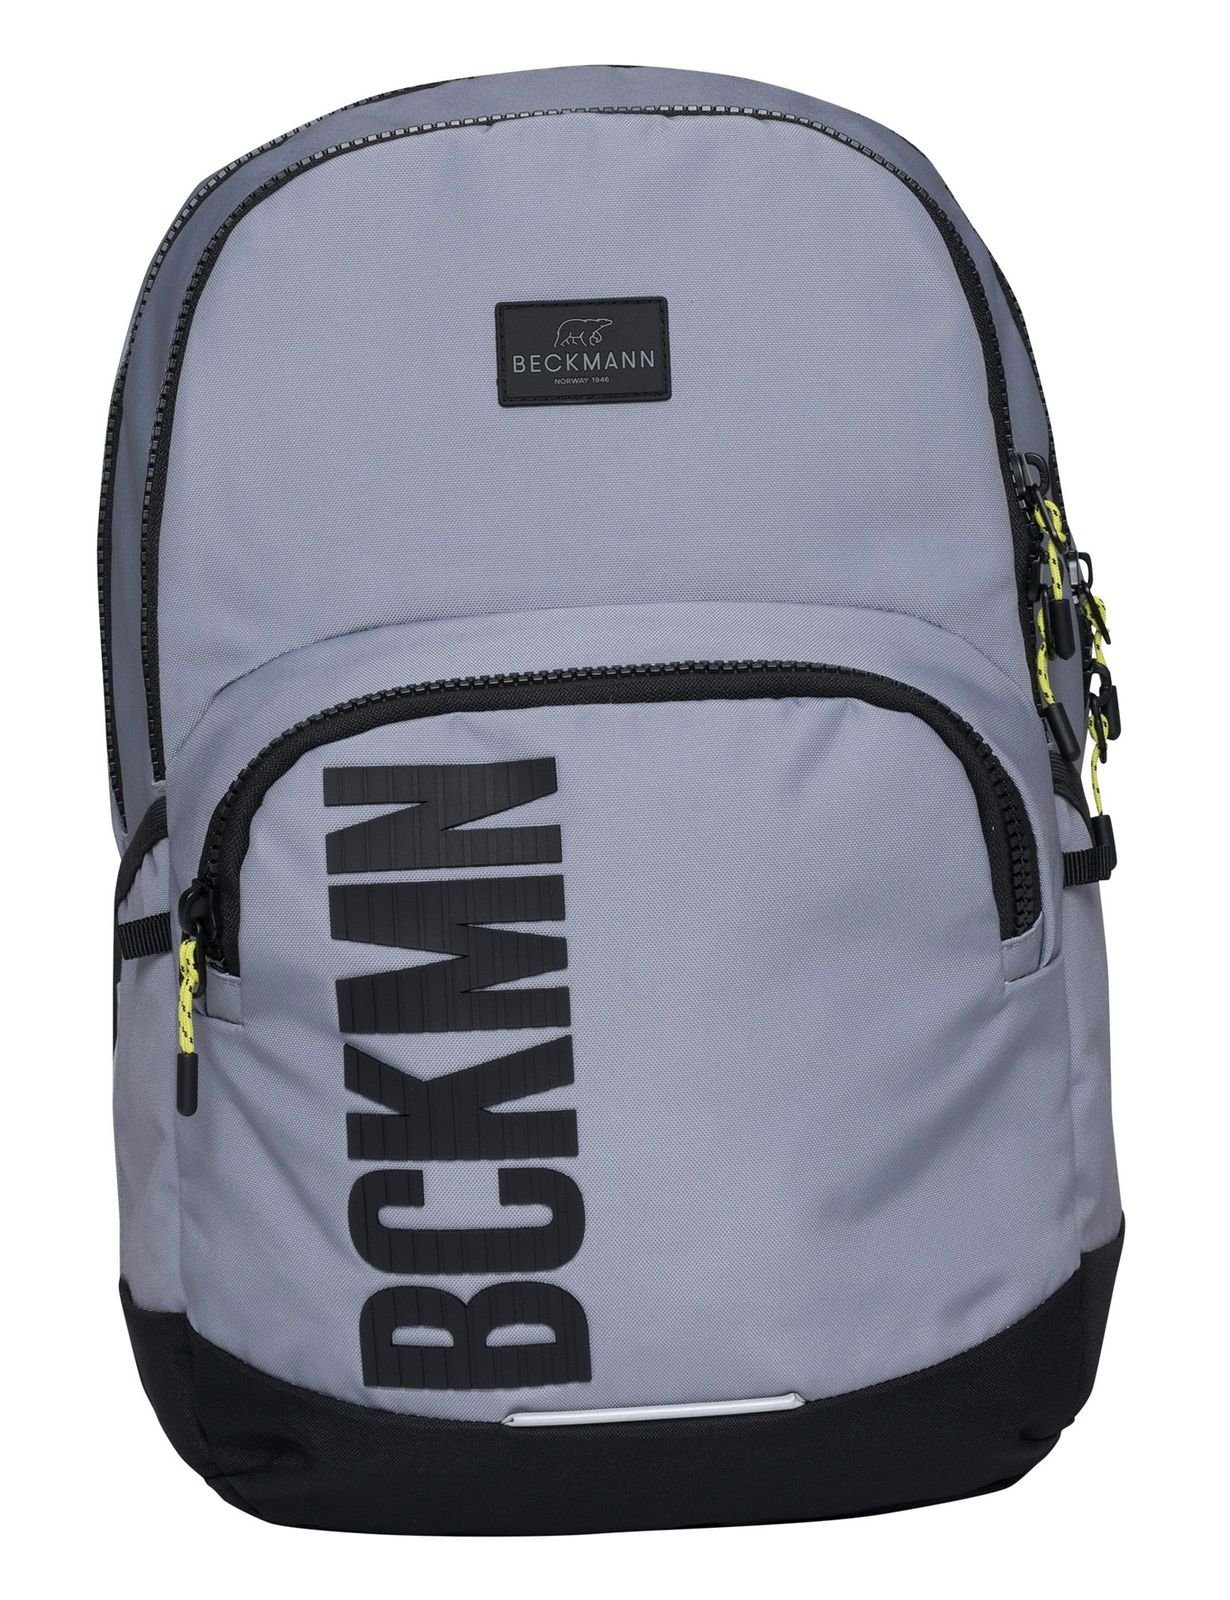 Beckmann Sport Rucksack Grey